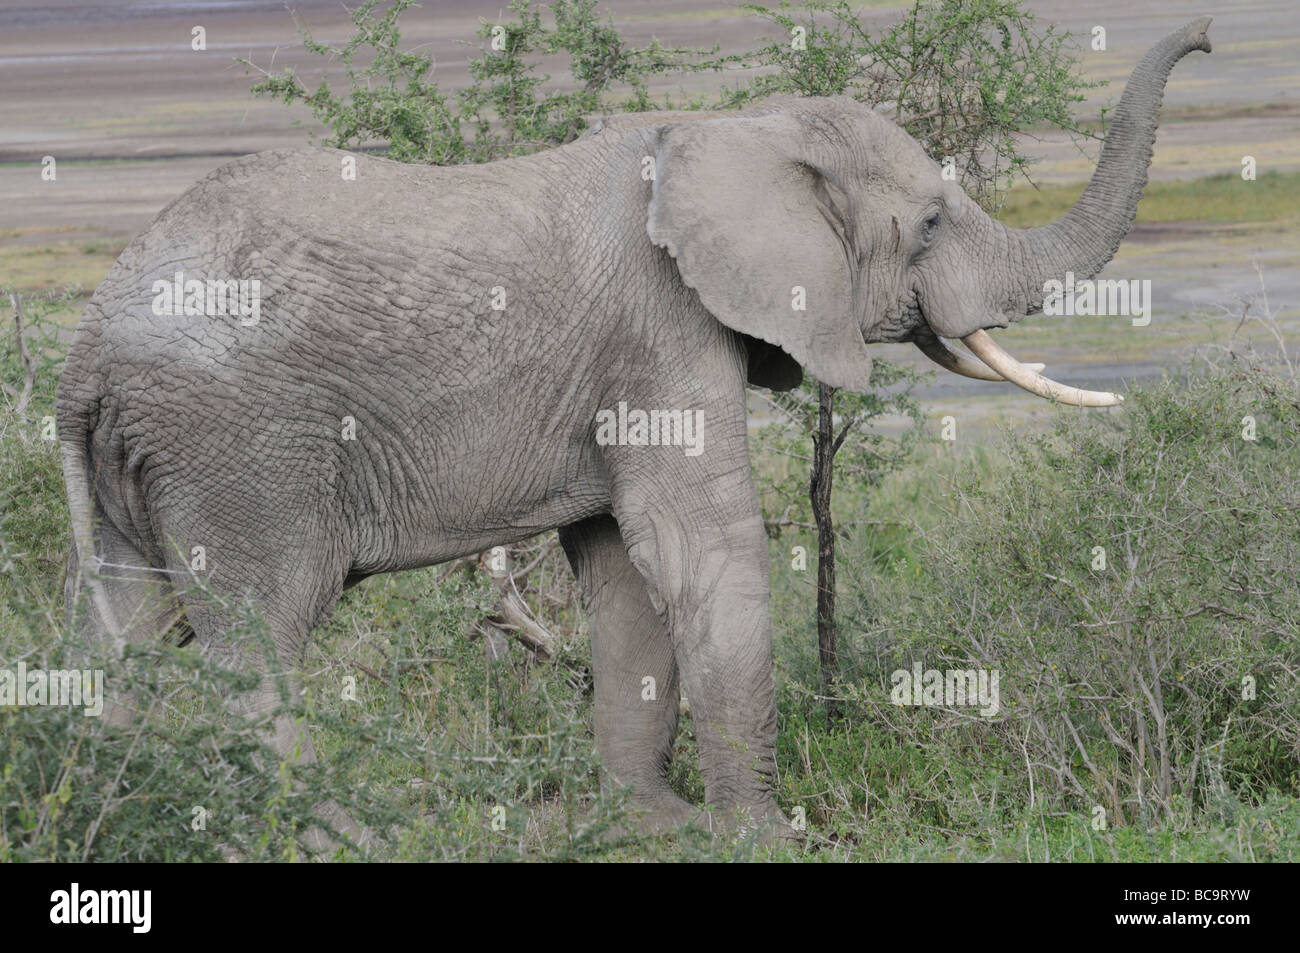 Stock Foto von einem Elefanten Staub Bath, Ndutu, Tansania, Februar 2009. Stockfoto